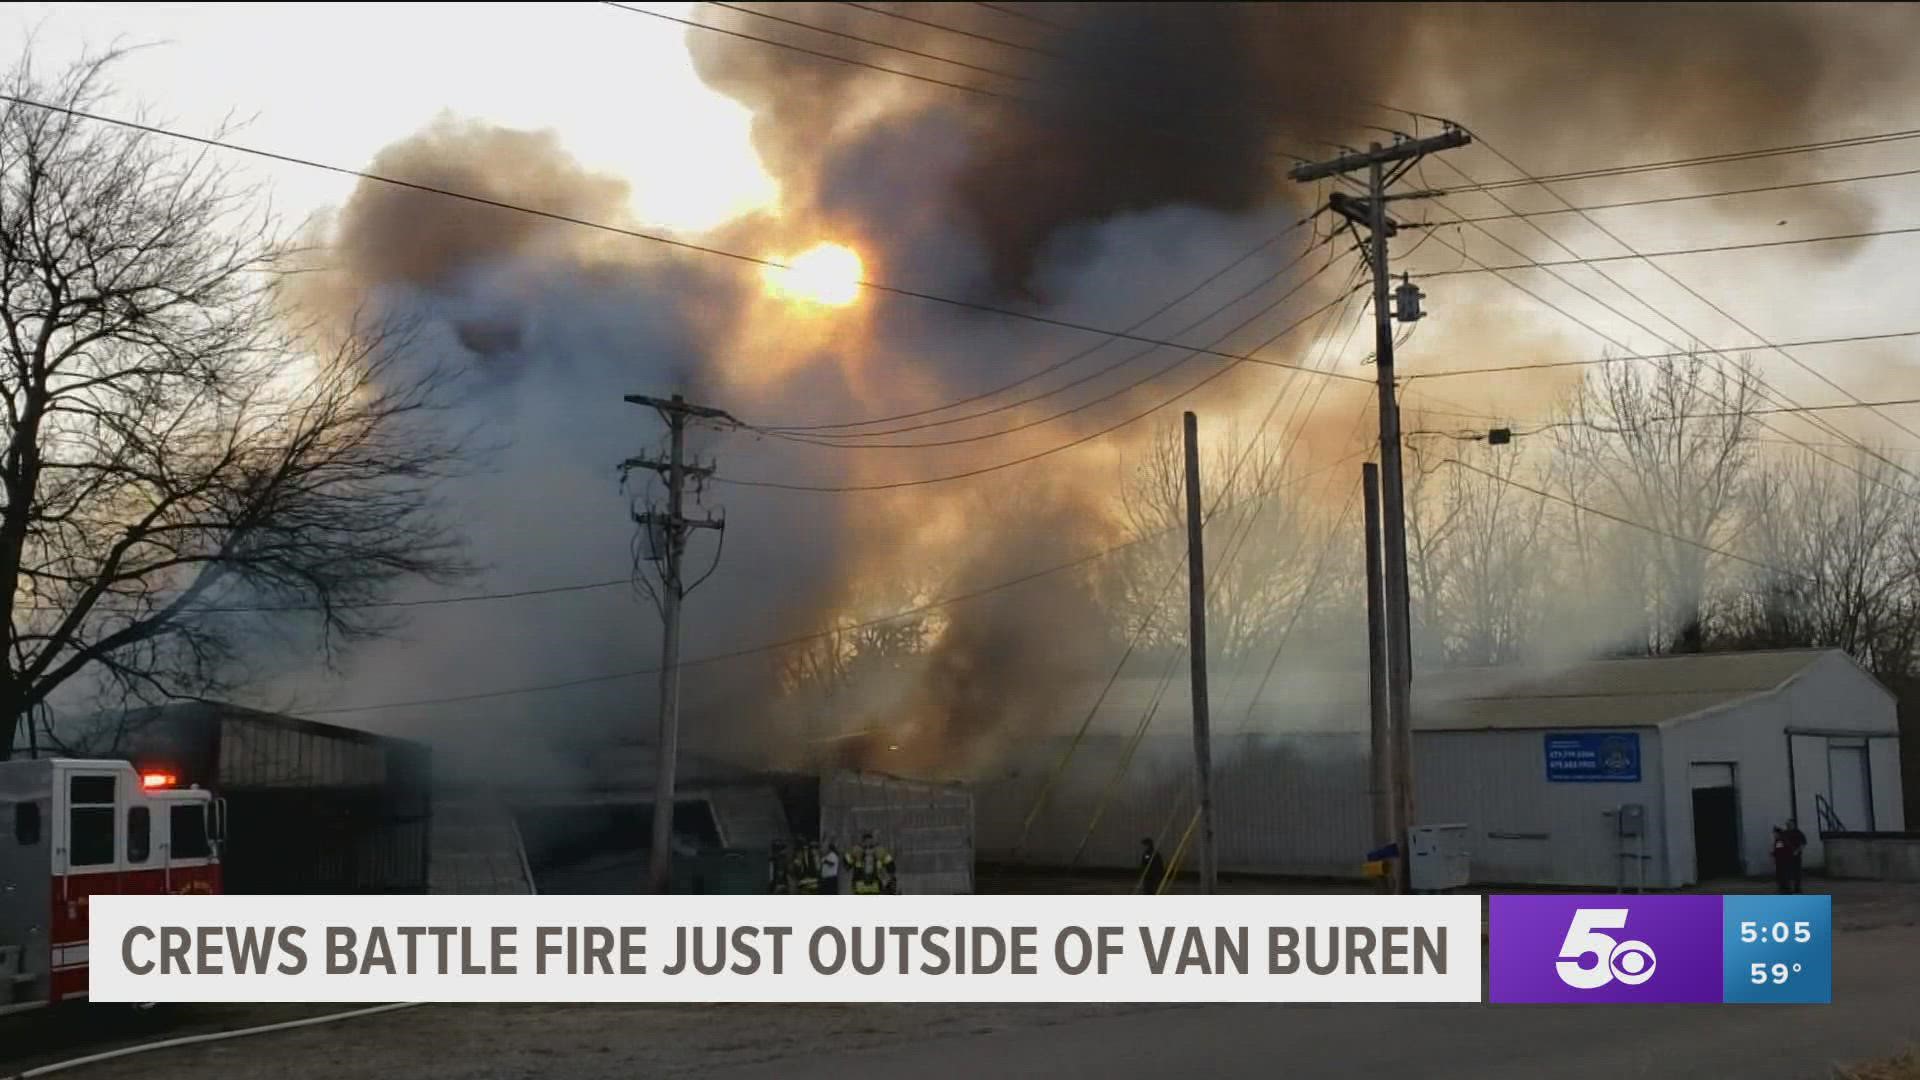 Fire crews battled a structure fire today, just outside of Van Buren.